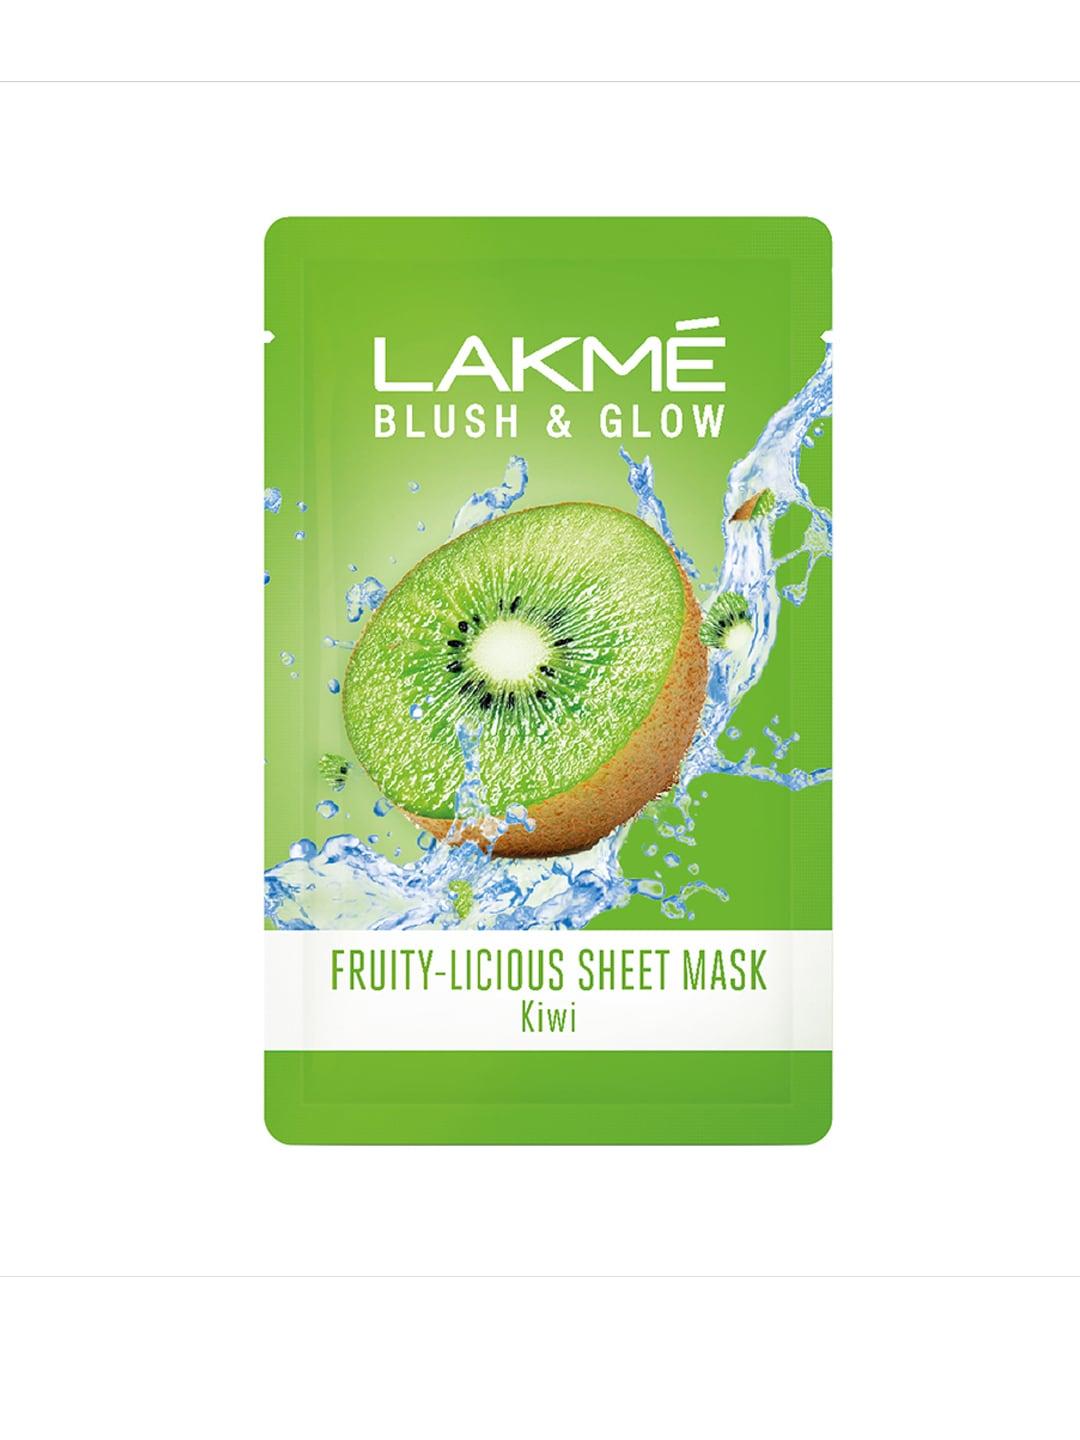 lakme blush & glow kiwi sheet mask 20 ml